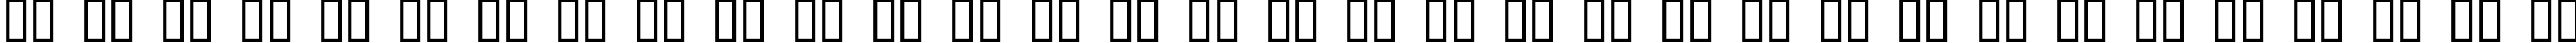 Пример написания русского алфавита шрифтом CornDog